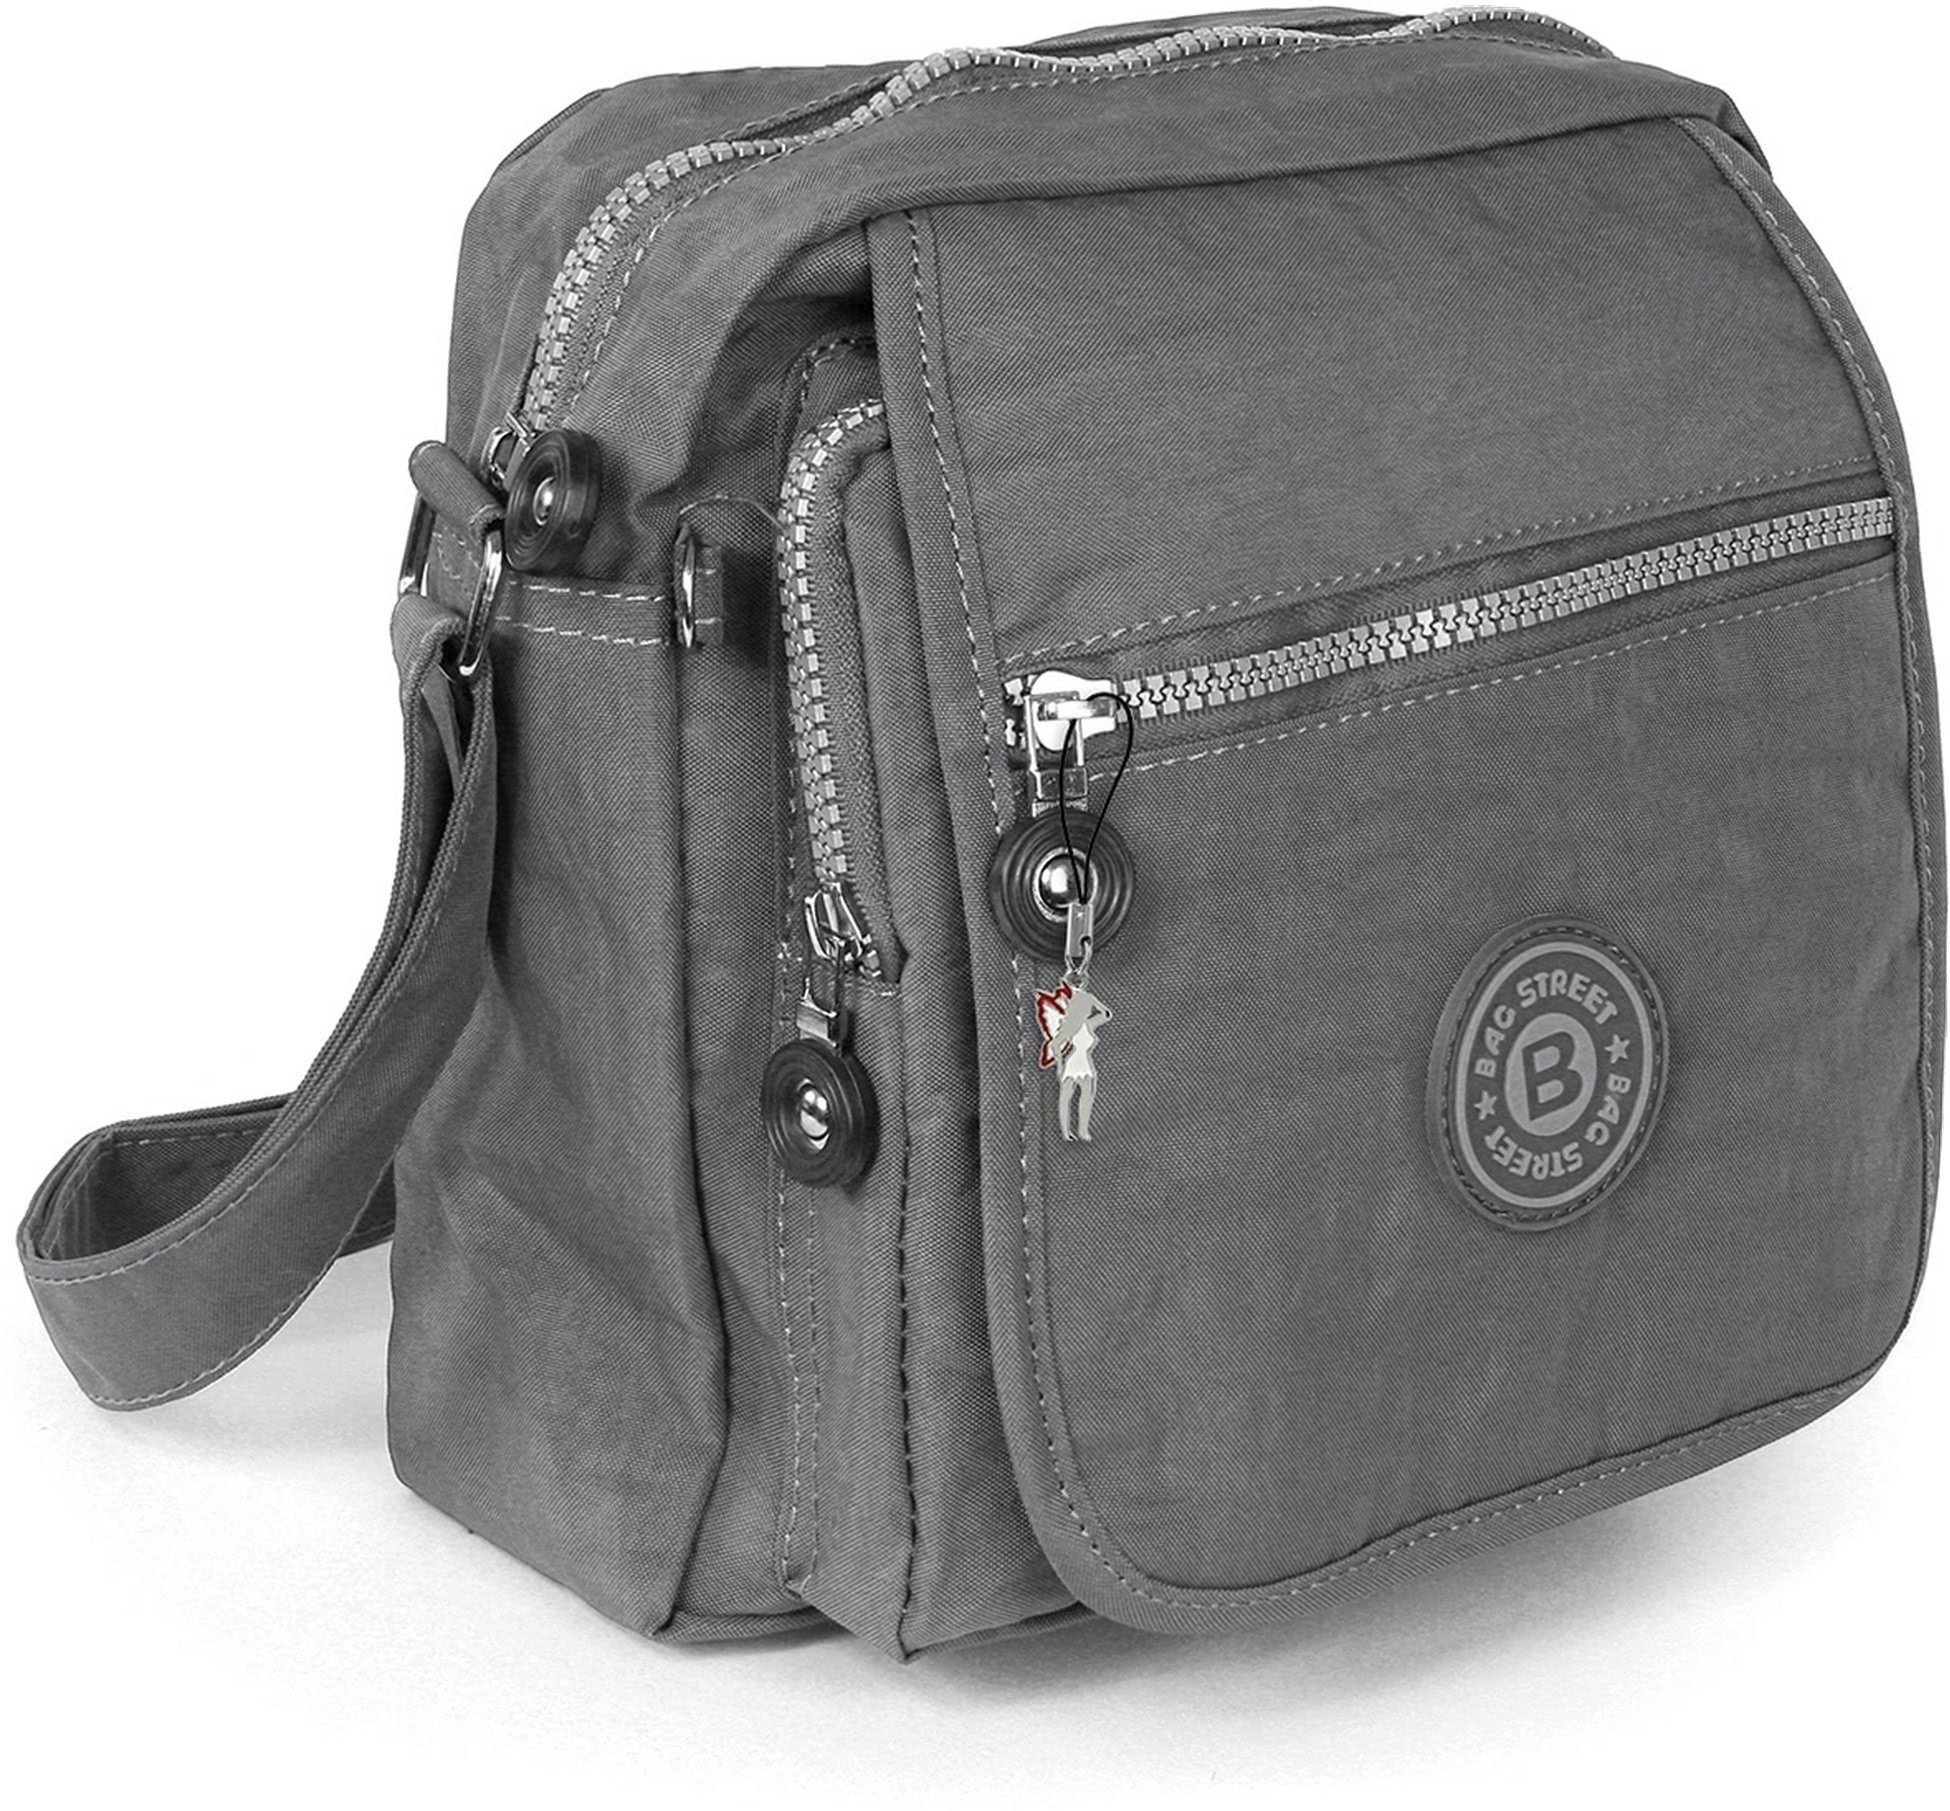 Nylon Umhängetasche Street BAG Tasche Tasche strapazierfähiges Textilnylon (Umhängetasche, Damenhandtasche Damen, Umhängetasche), grau Jugend STREET Bag